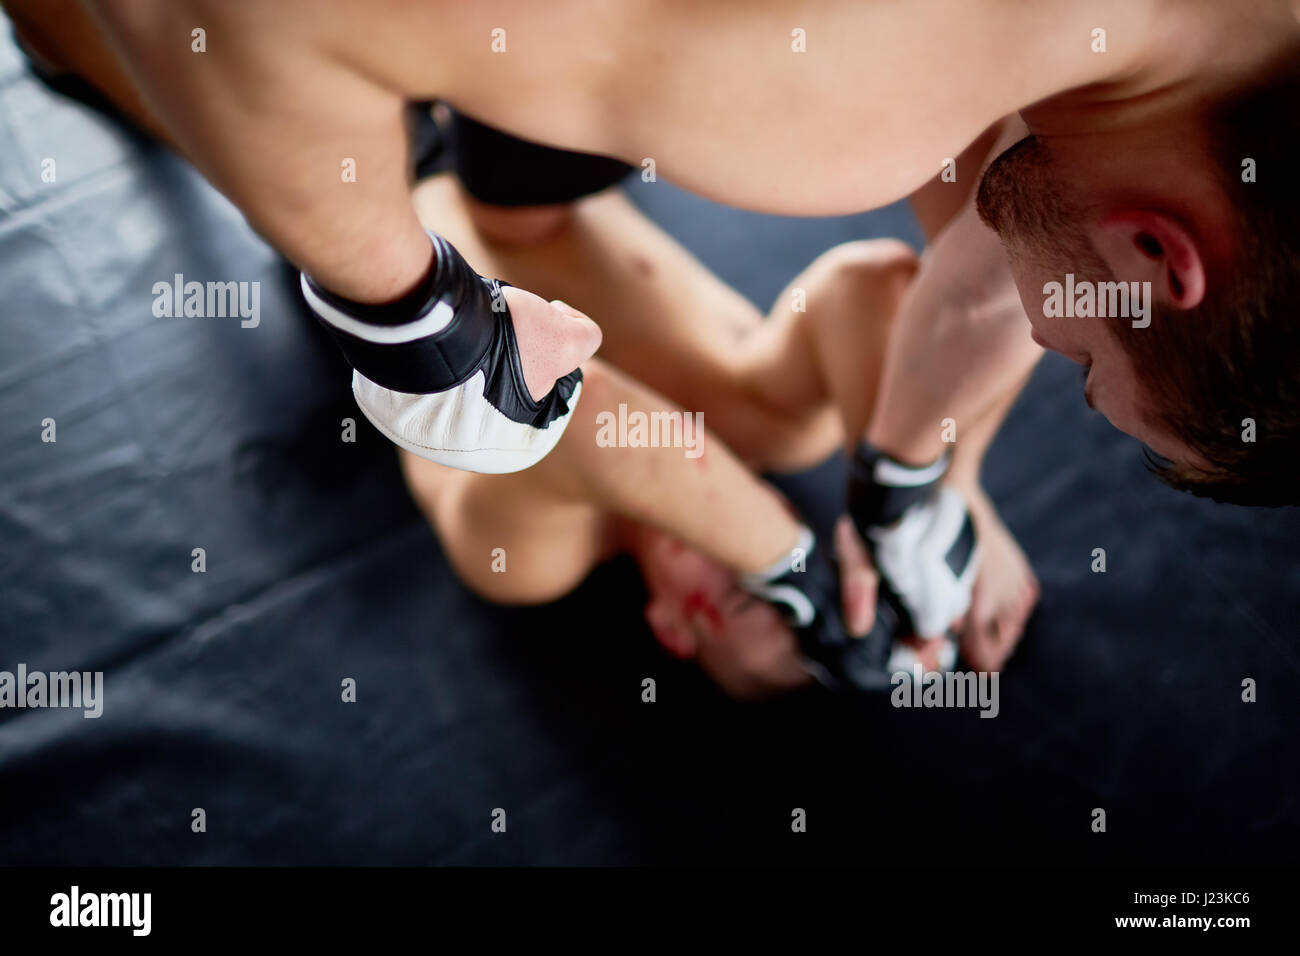 Über Ansicht-Porträt von Profi-Wrestler im Kampf mit Gegner trifft ihn im Gesicht am Boden, Blut gesehen Stockfoto